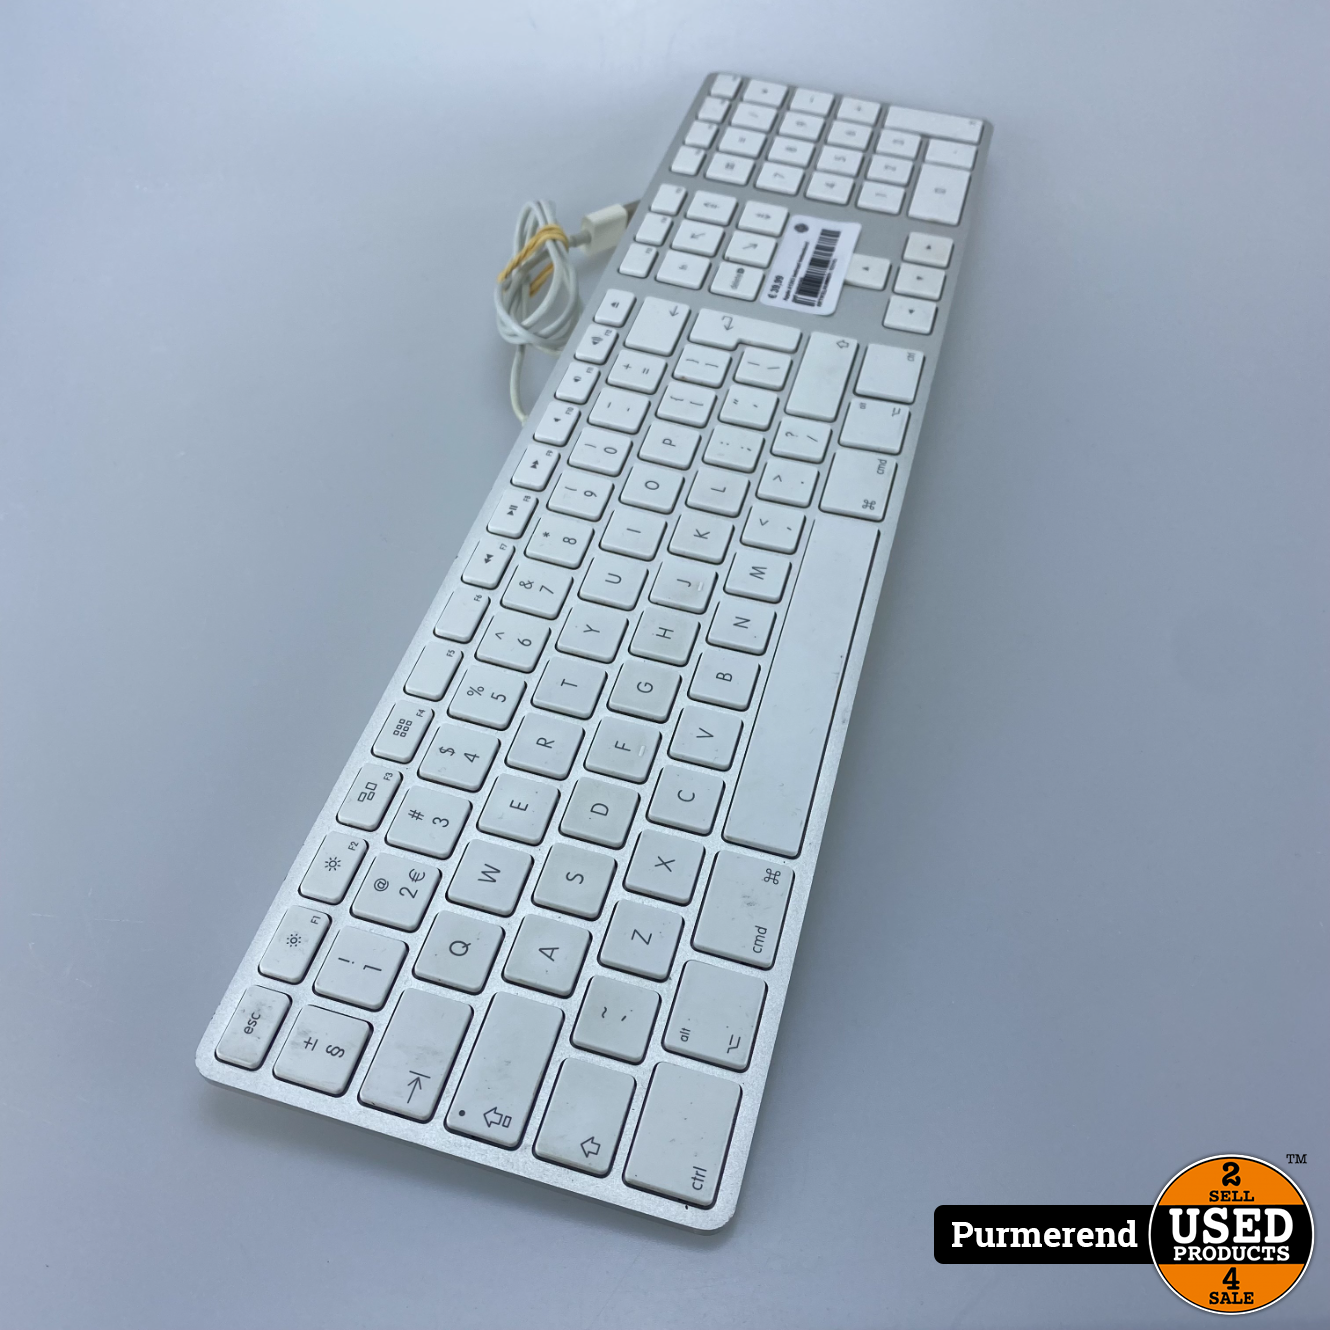 Vader fage Winkelier Leidinggevende Apple A1243 bedraad toetsenbord met numeriek - Used Products Purmerend